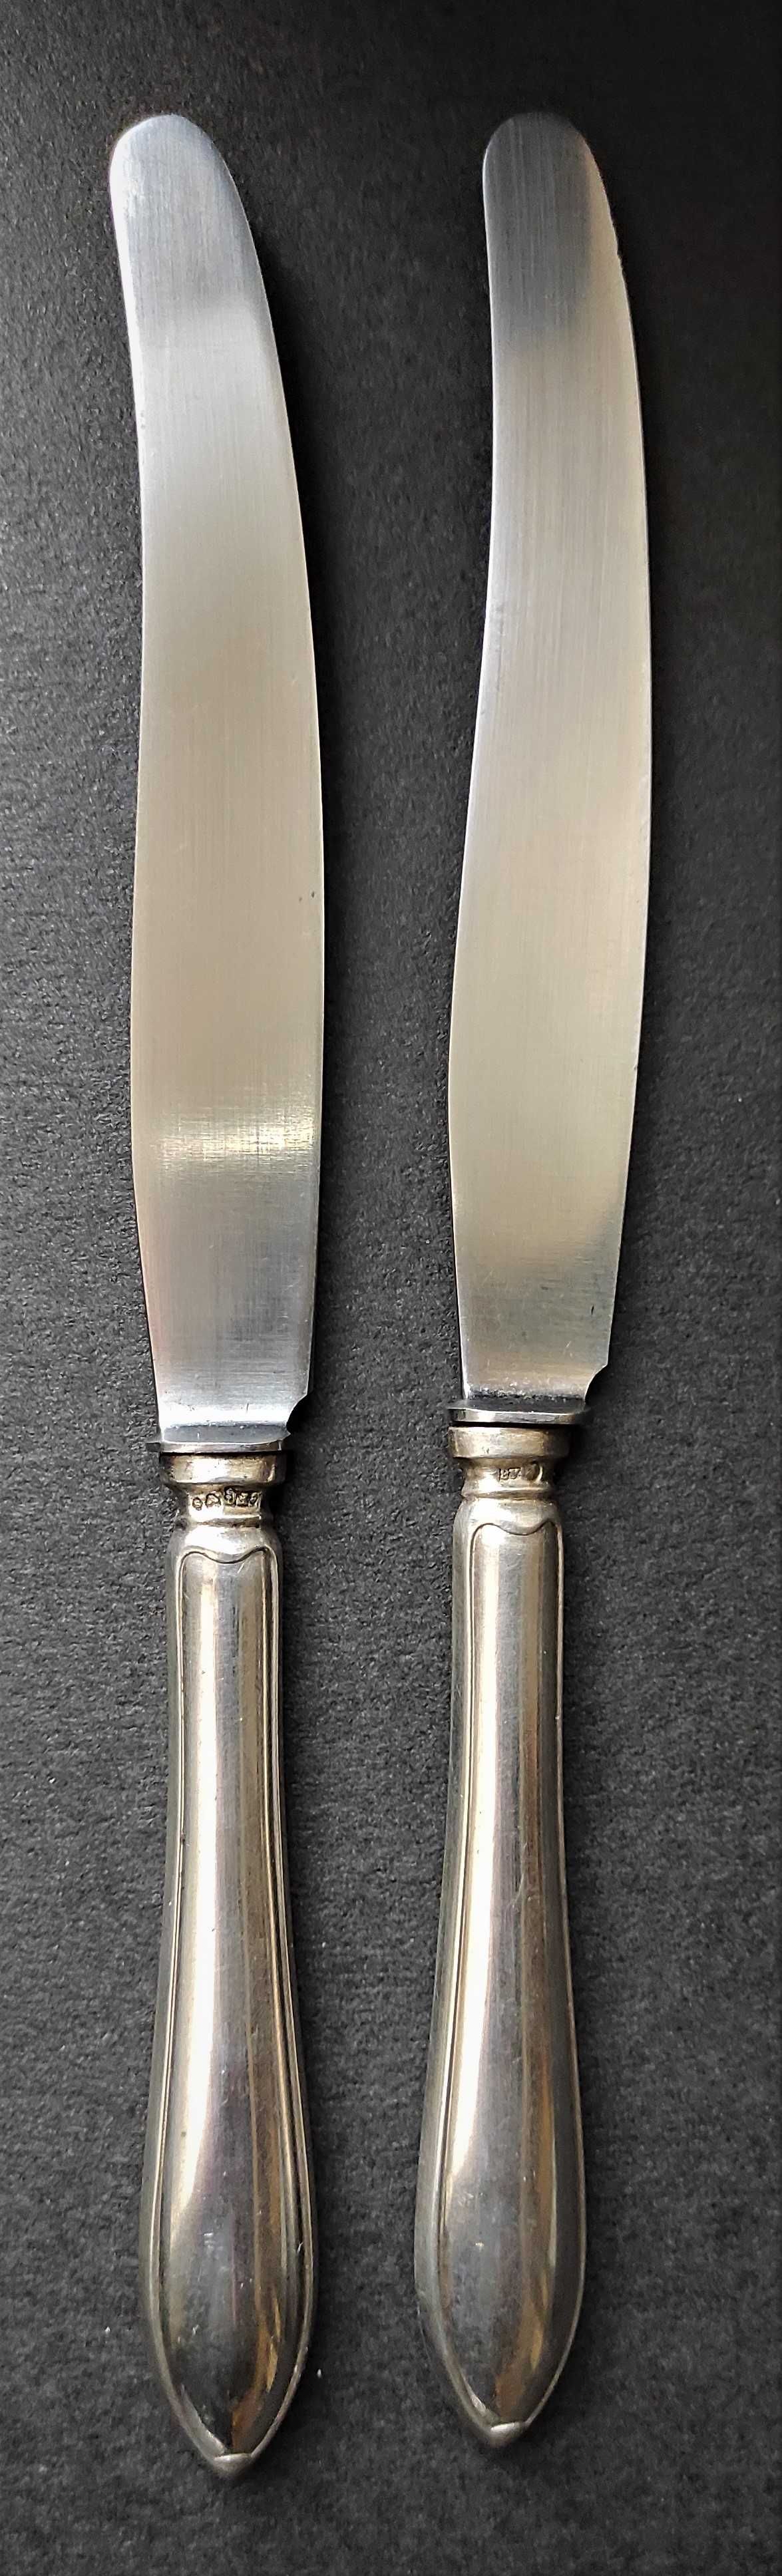 Пара столовых ножей с рукоятками из серебра. Столовое серебро.